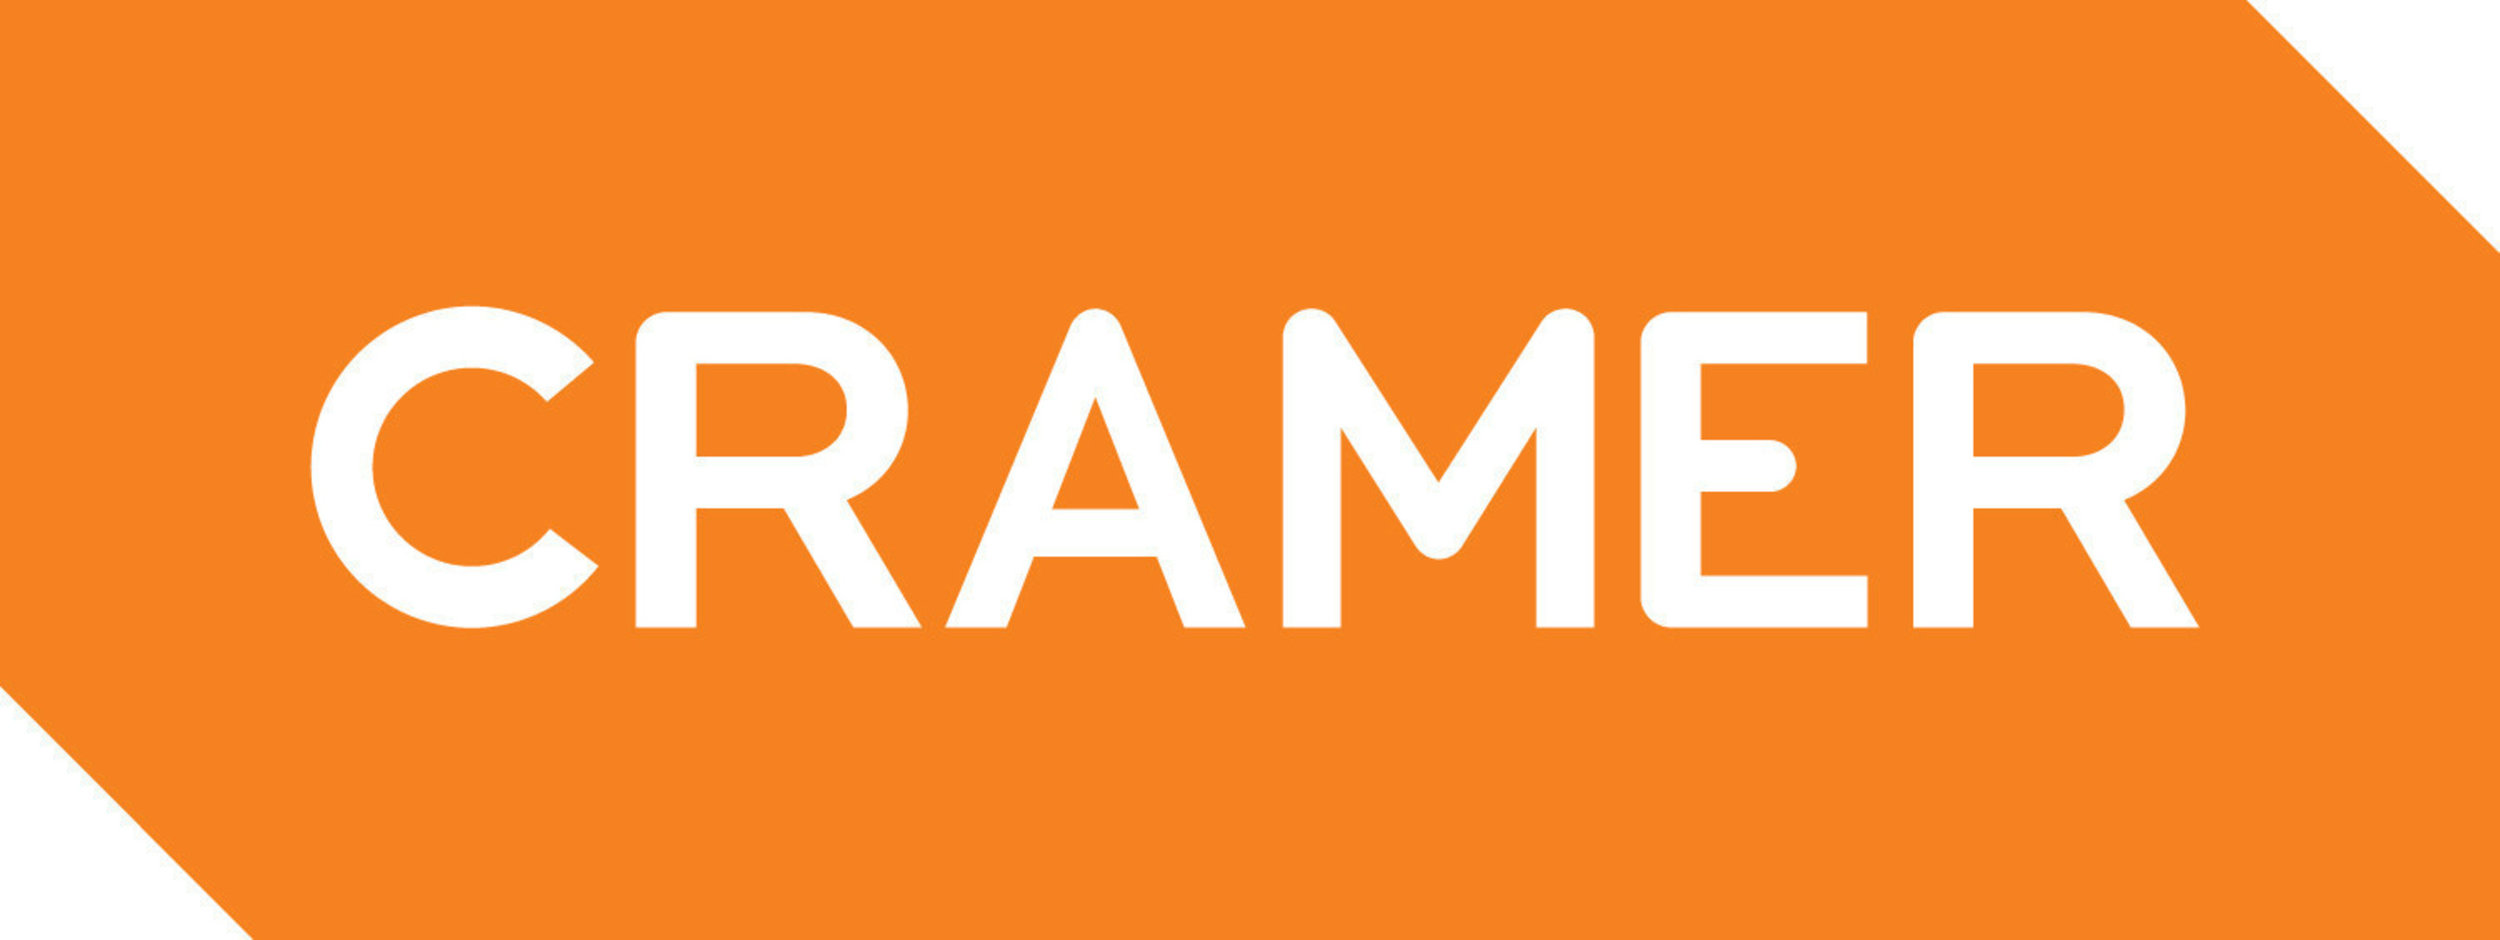 cramer-logo.jpg